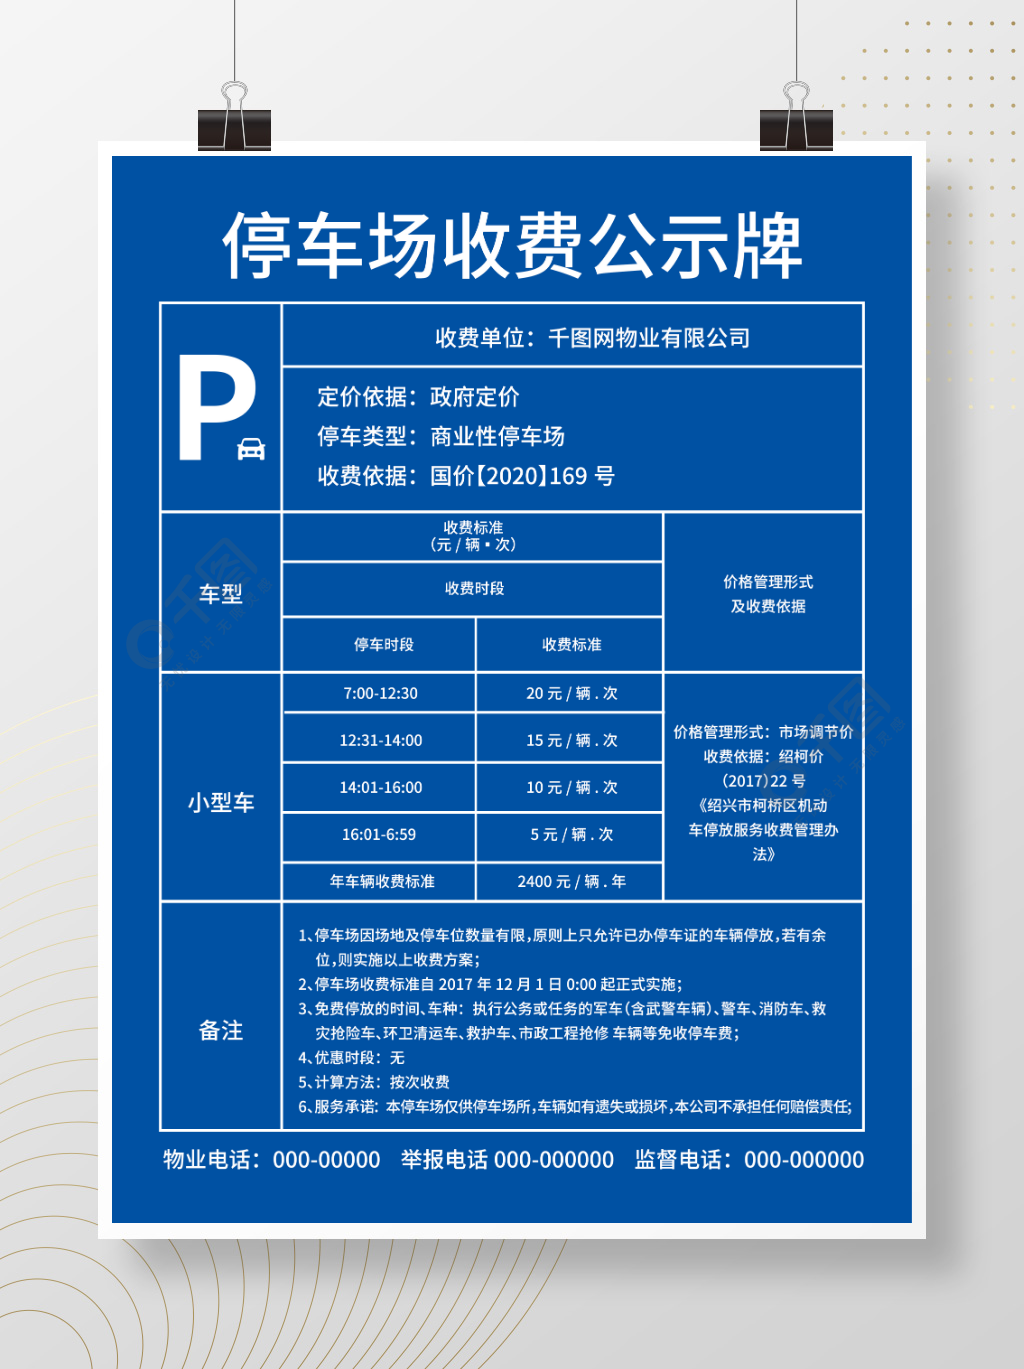 停车场收费计费标准公示牌